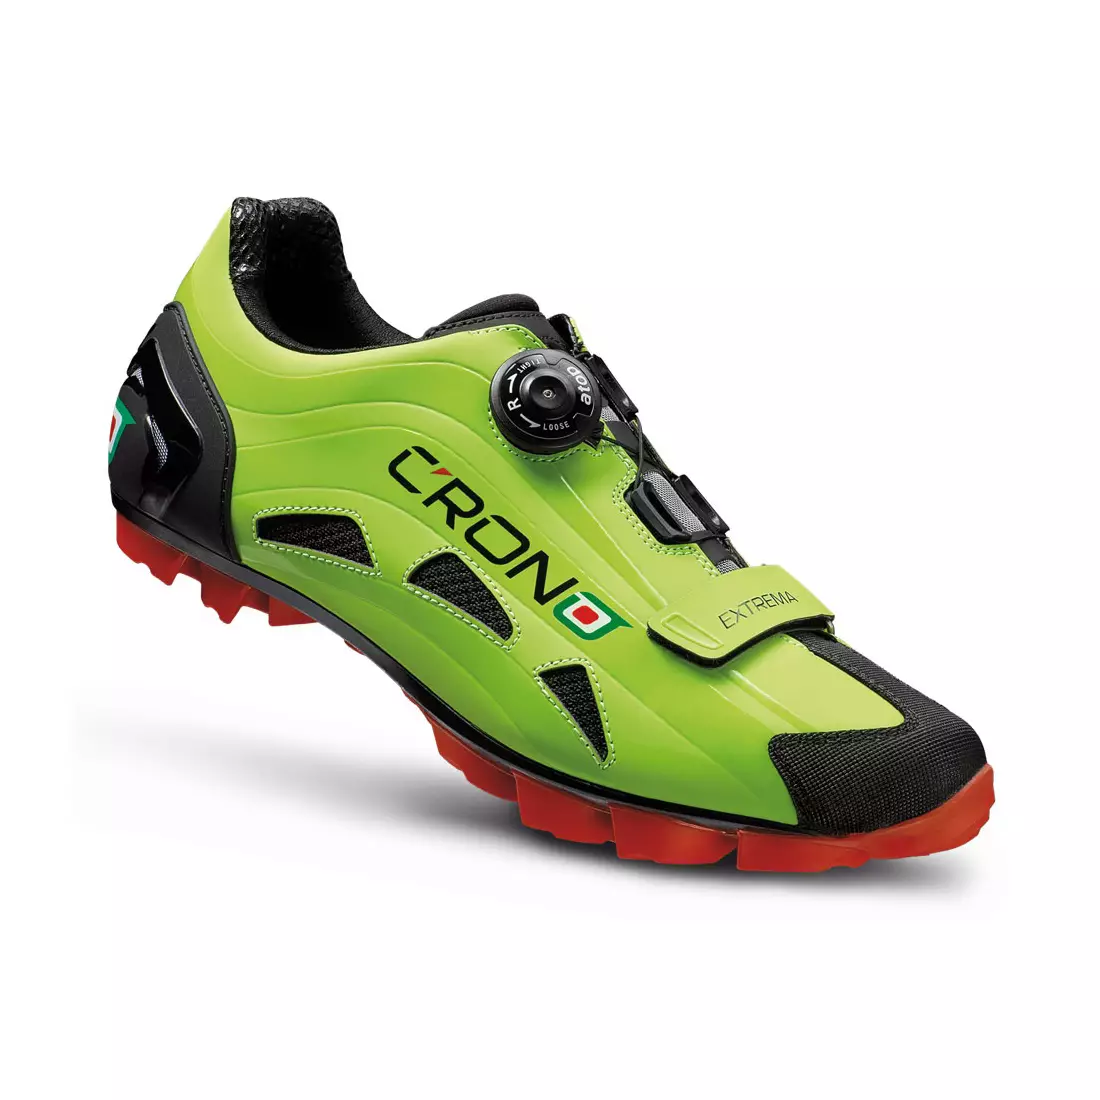 CRONO EXTREMA NYLON - MTB cycling shoes - color: Green